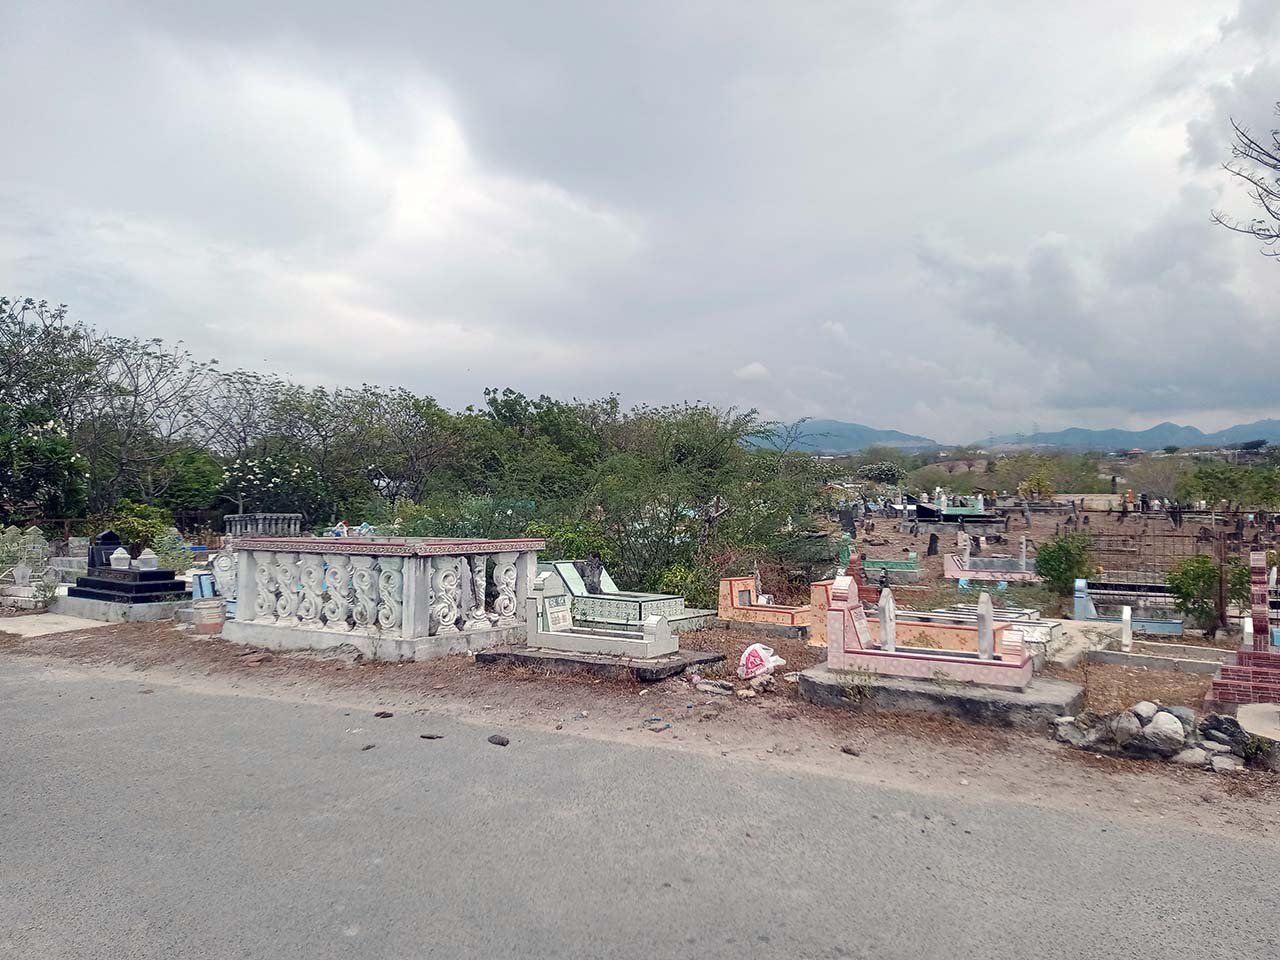 TUTURA.ID - Mengatasi persoalan krisis lahan makam di Kota Palu